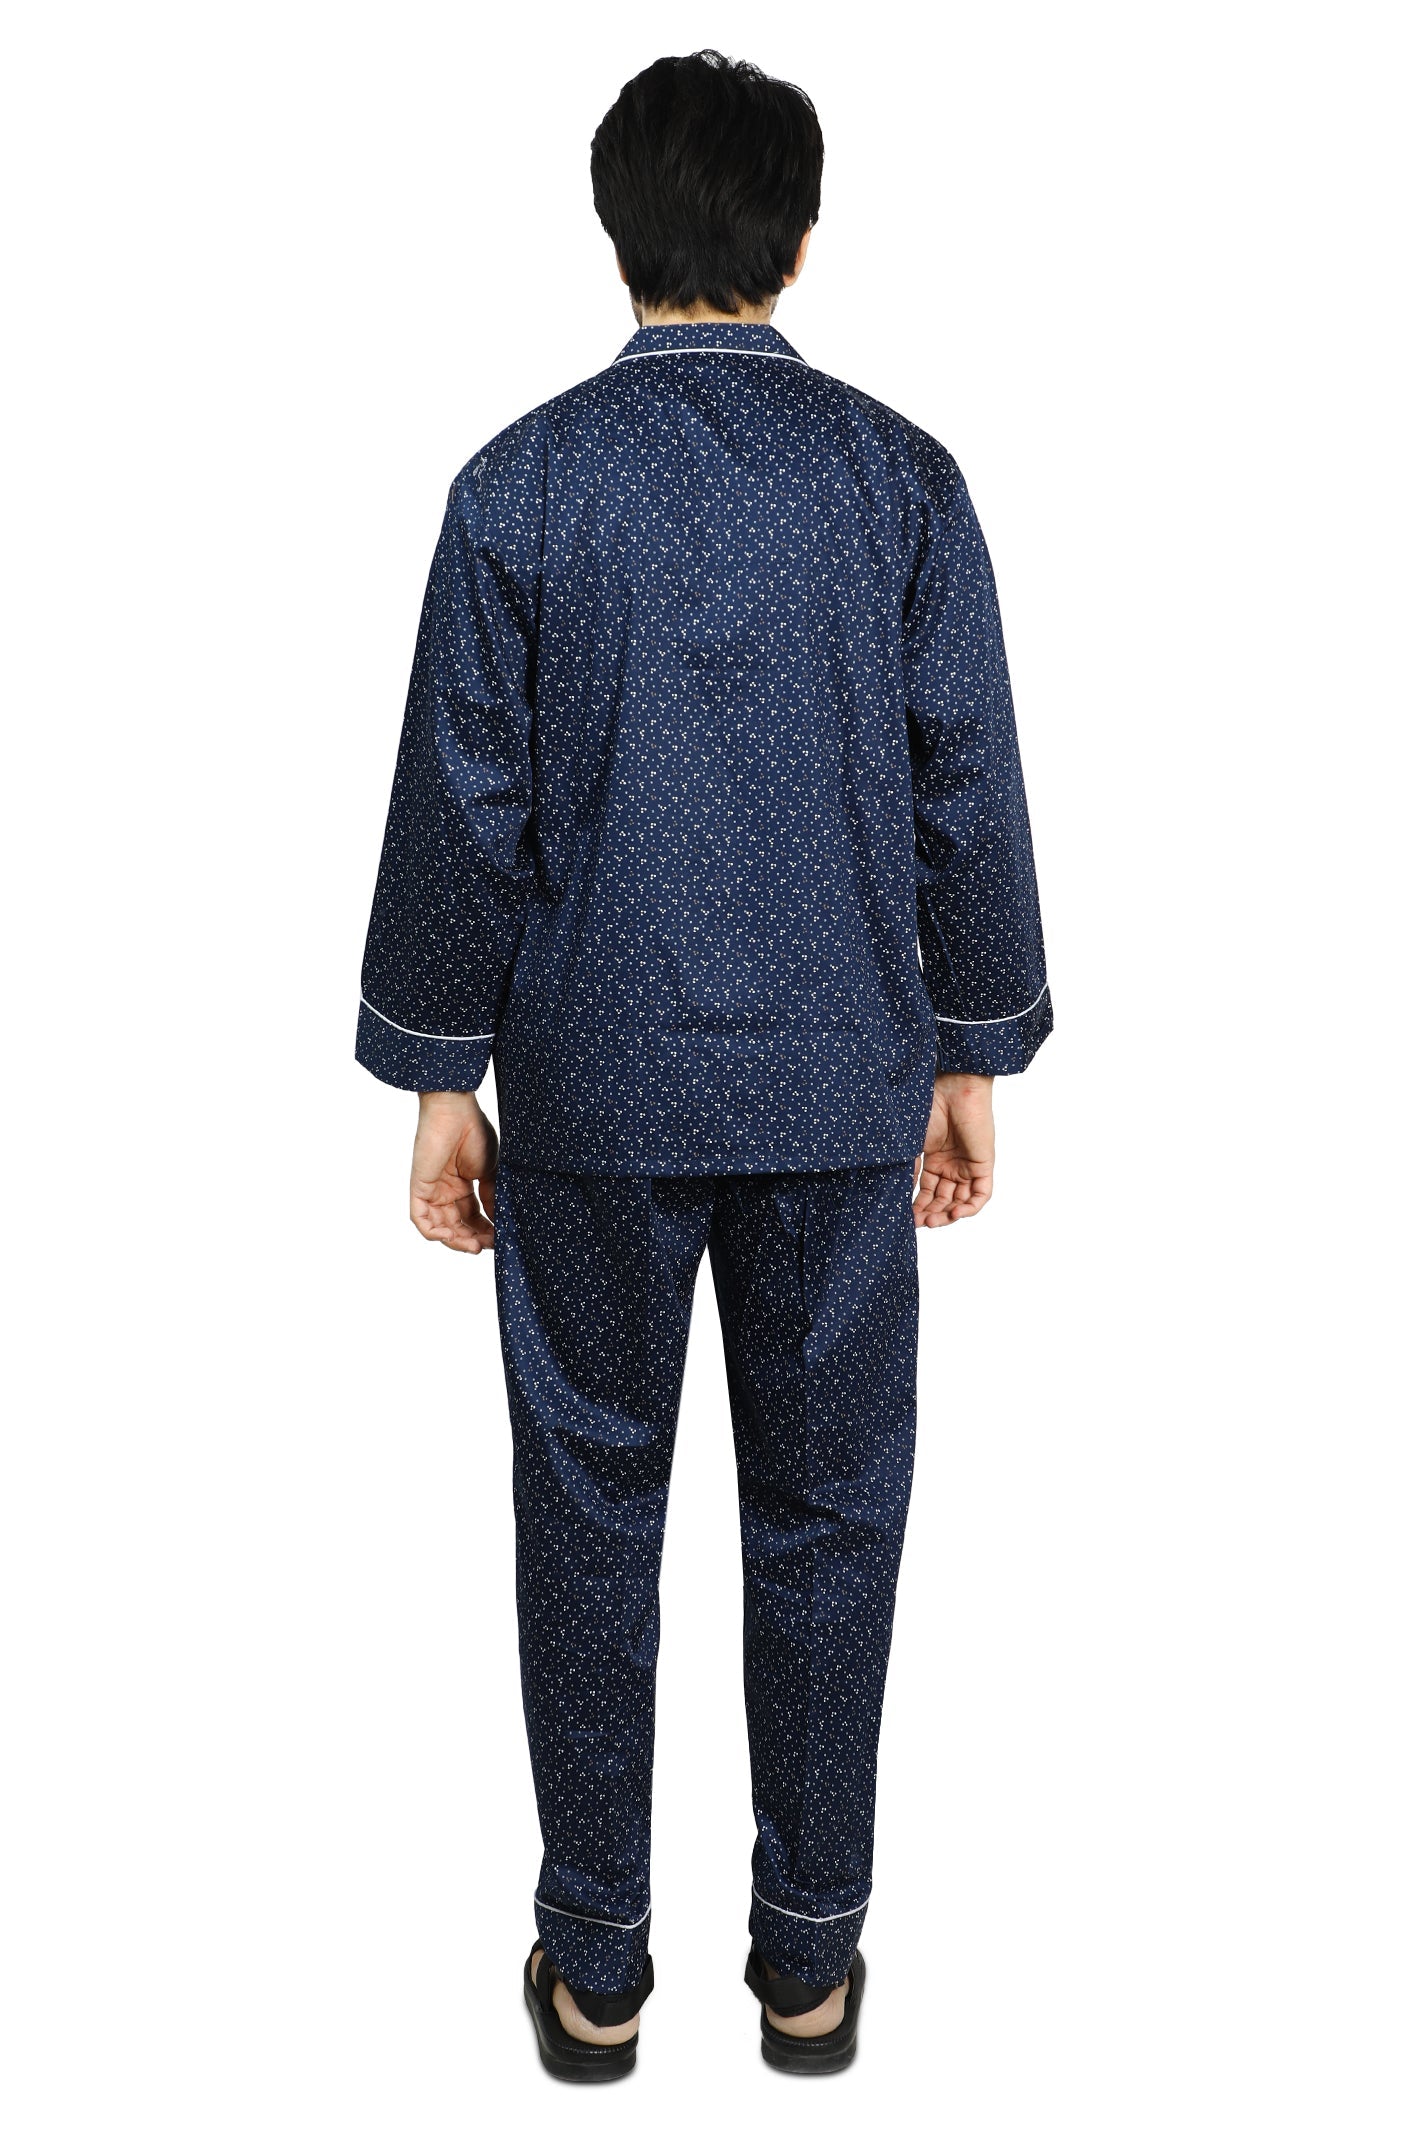 Diner's Night Suit for Men SKU: FNS003-N-BLUE - Diners